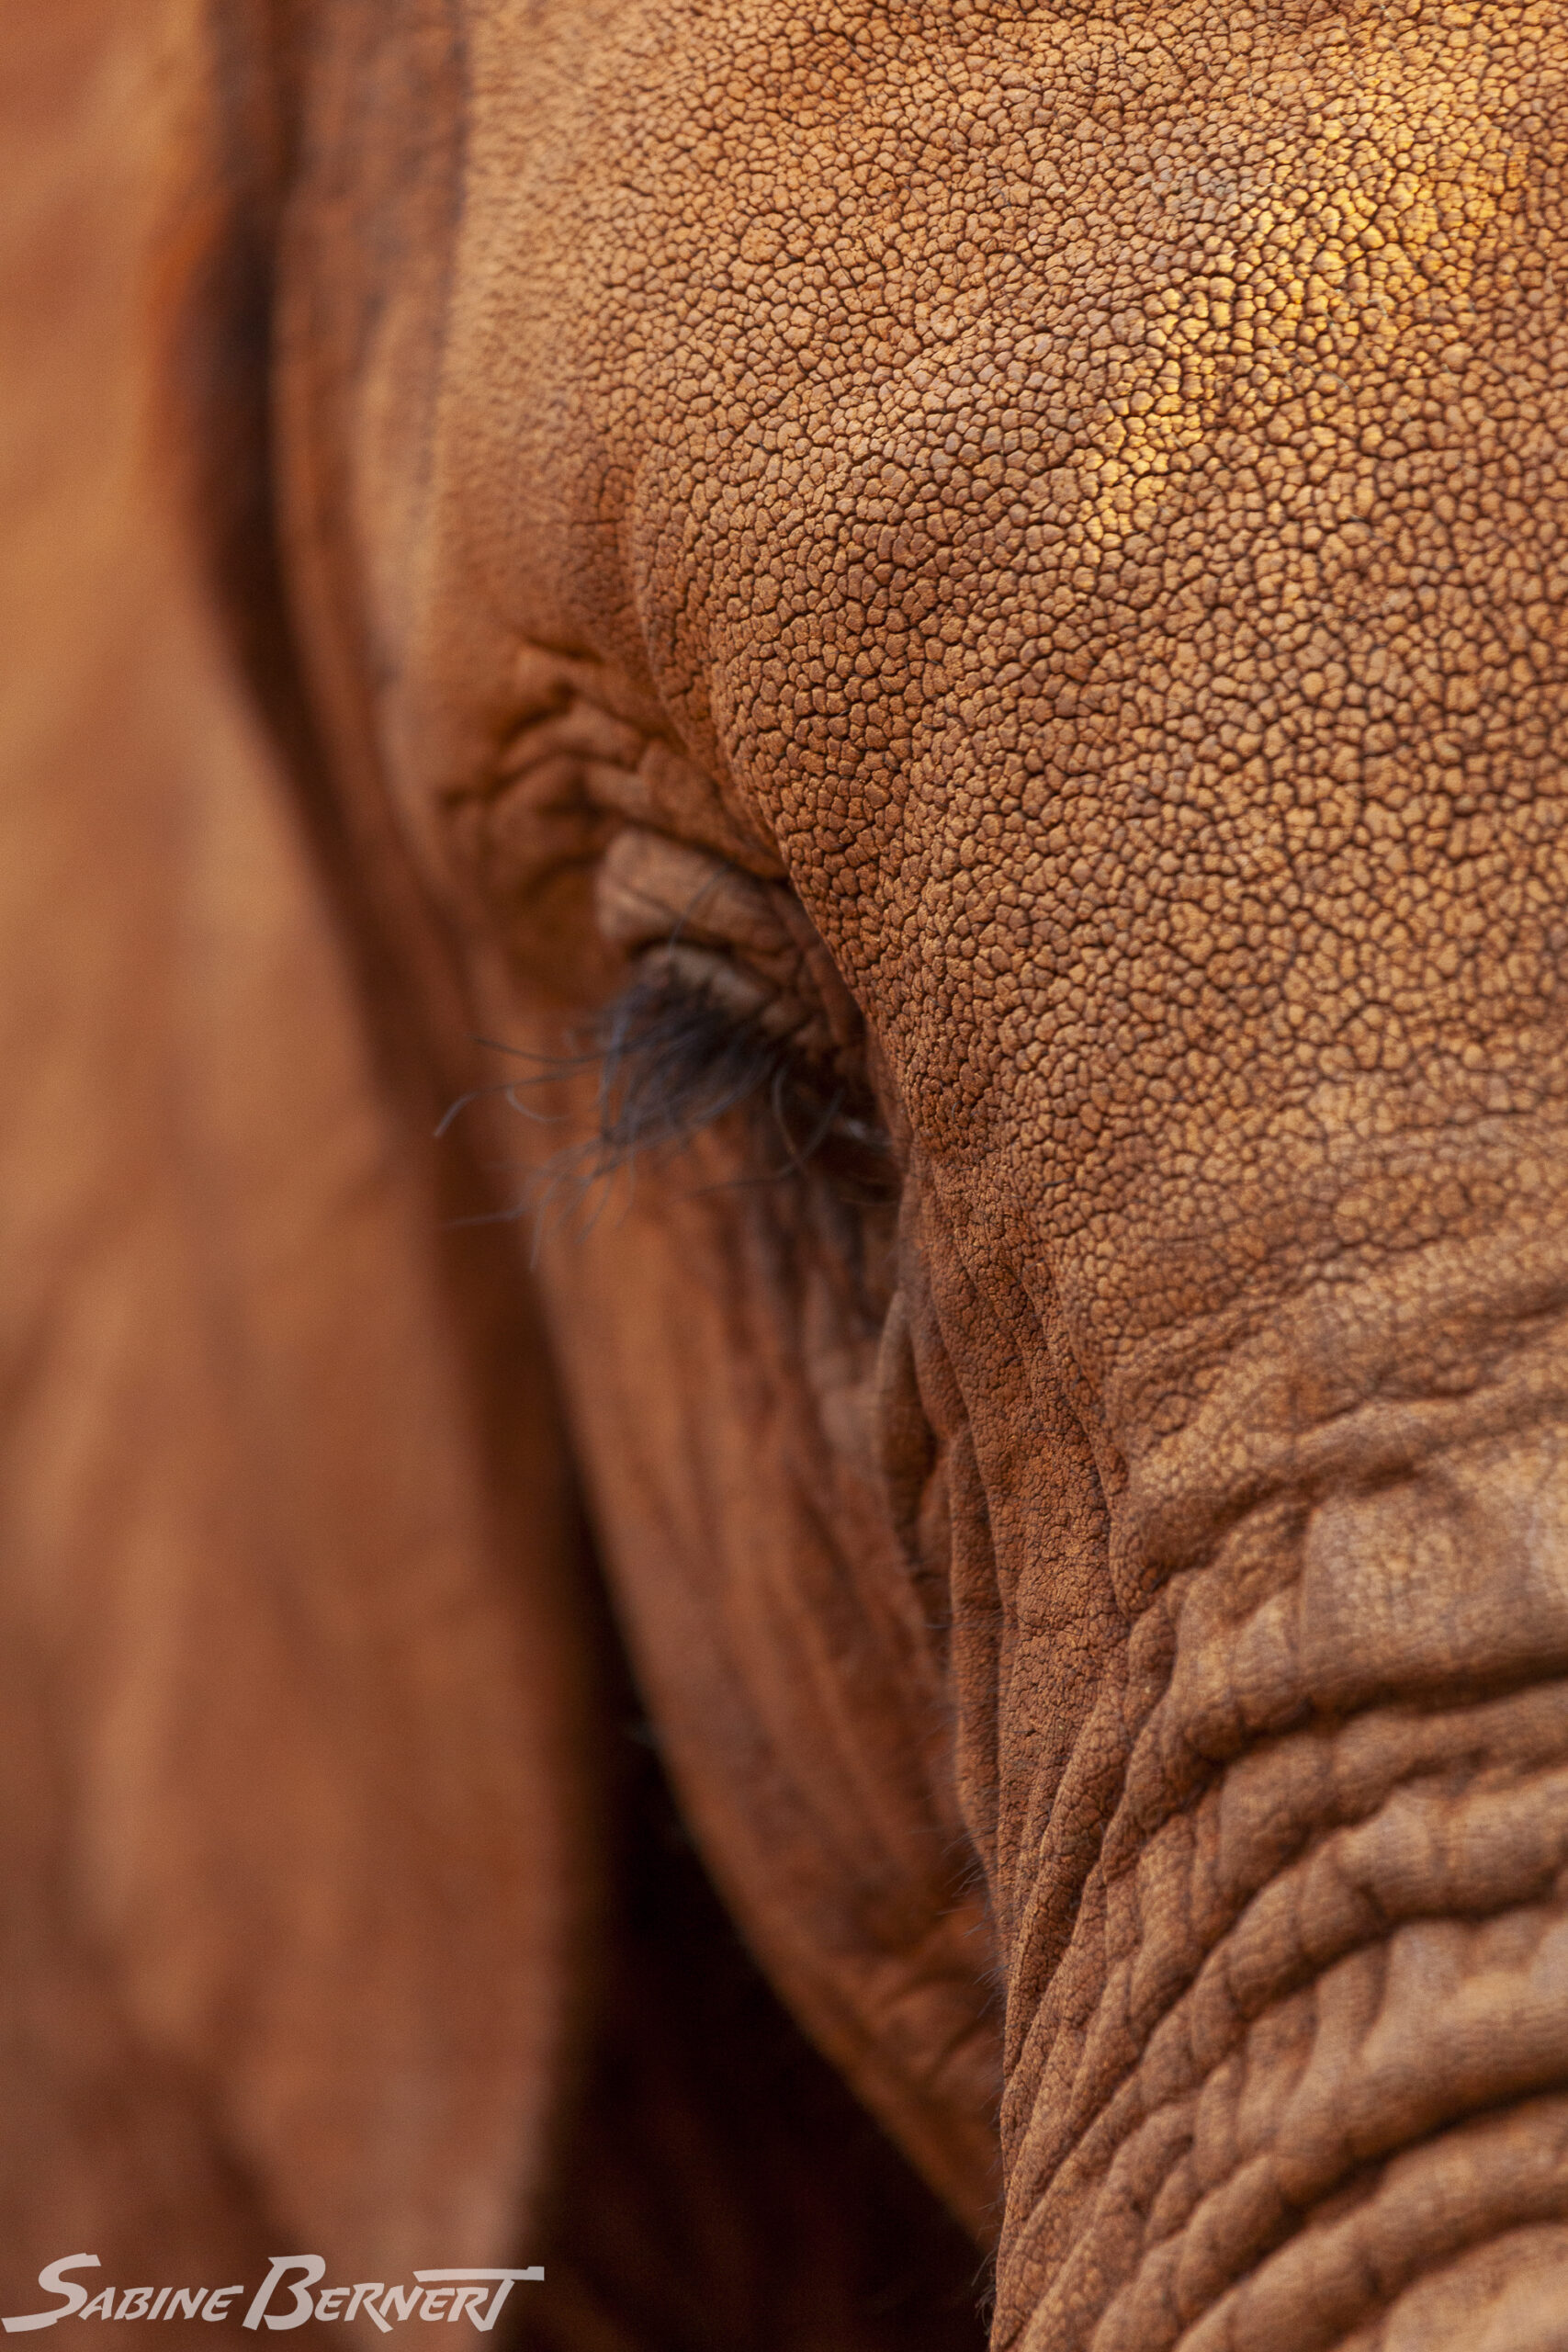 Un éléphanteau de savane d'Afrique au David Sheldrick Wildlife Trust, Kenya. Le Trust recueille les éléphanteaux orphelins et les élève avant de les relâcher dans des reserves.